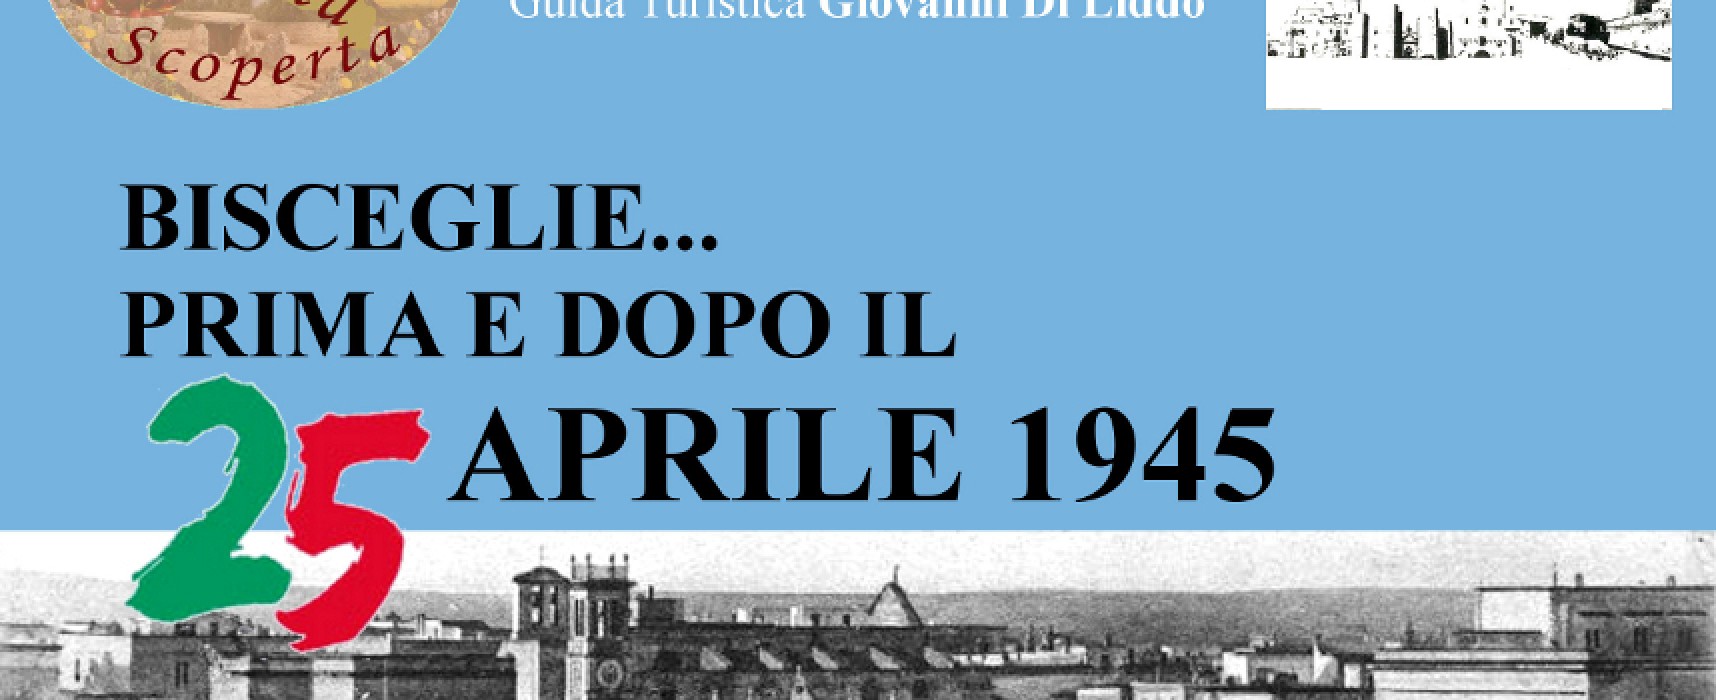 Il 25 aprile visita guidata di Puglia Scoperta sui luoghi del fascismo e dell’antifascismo